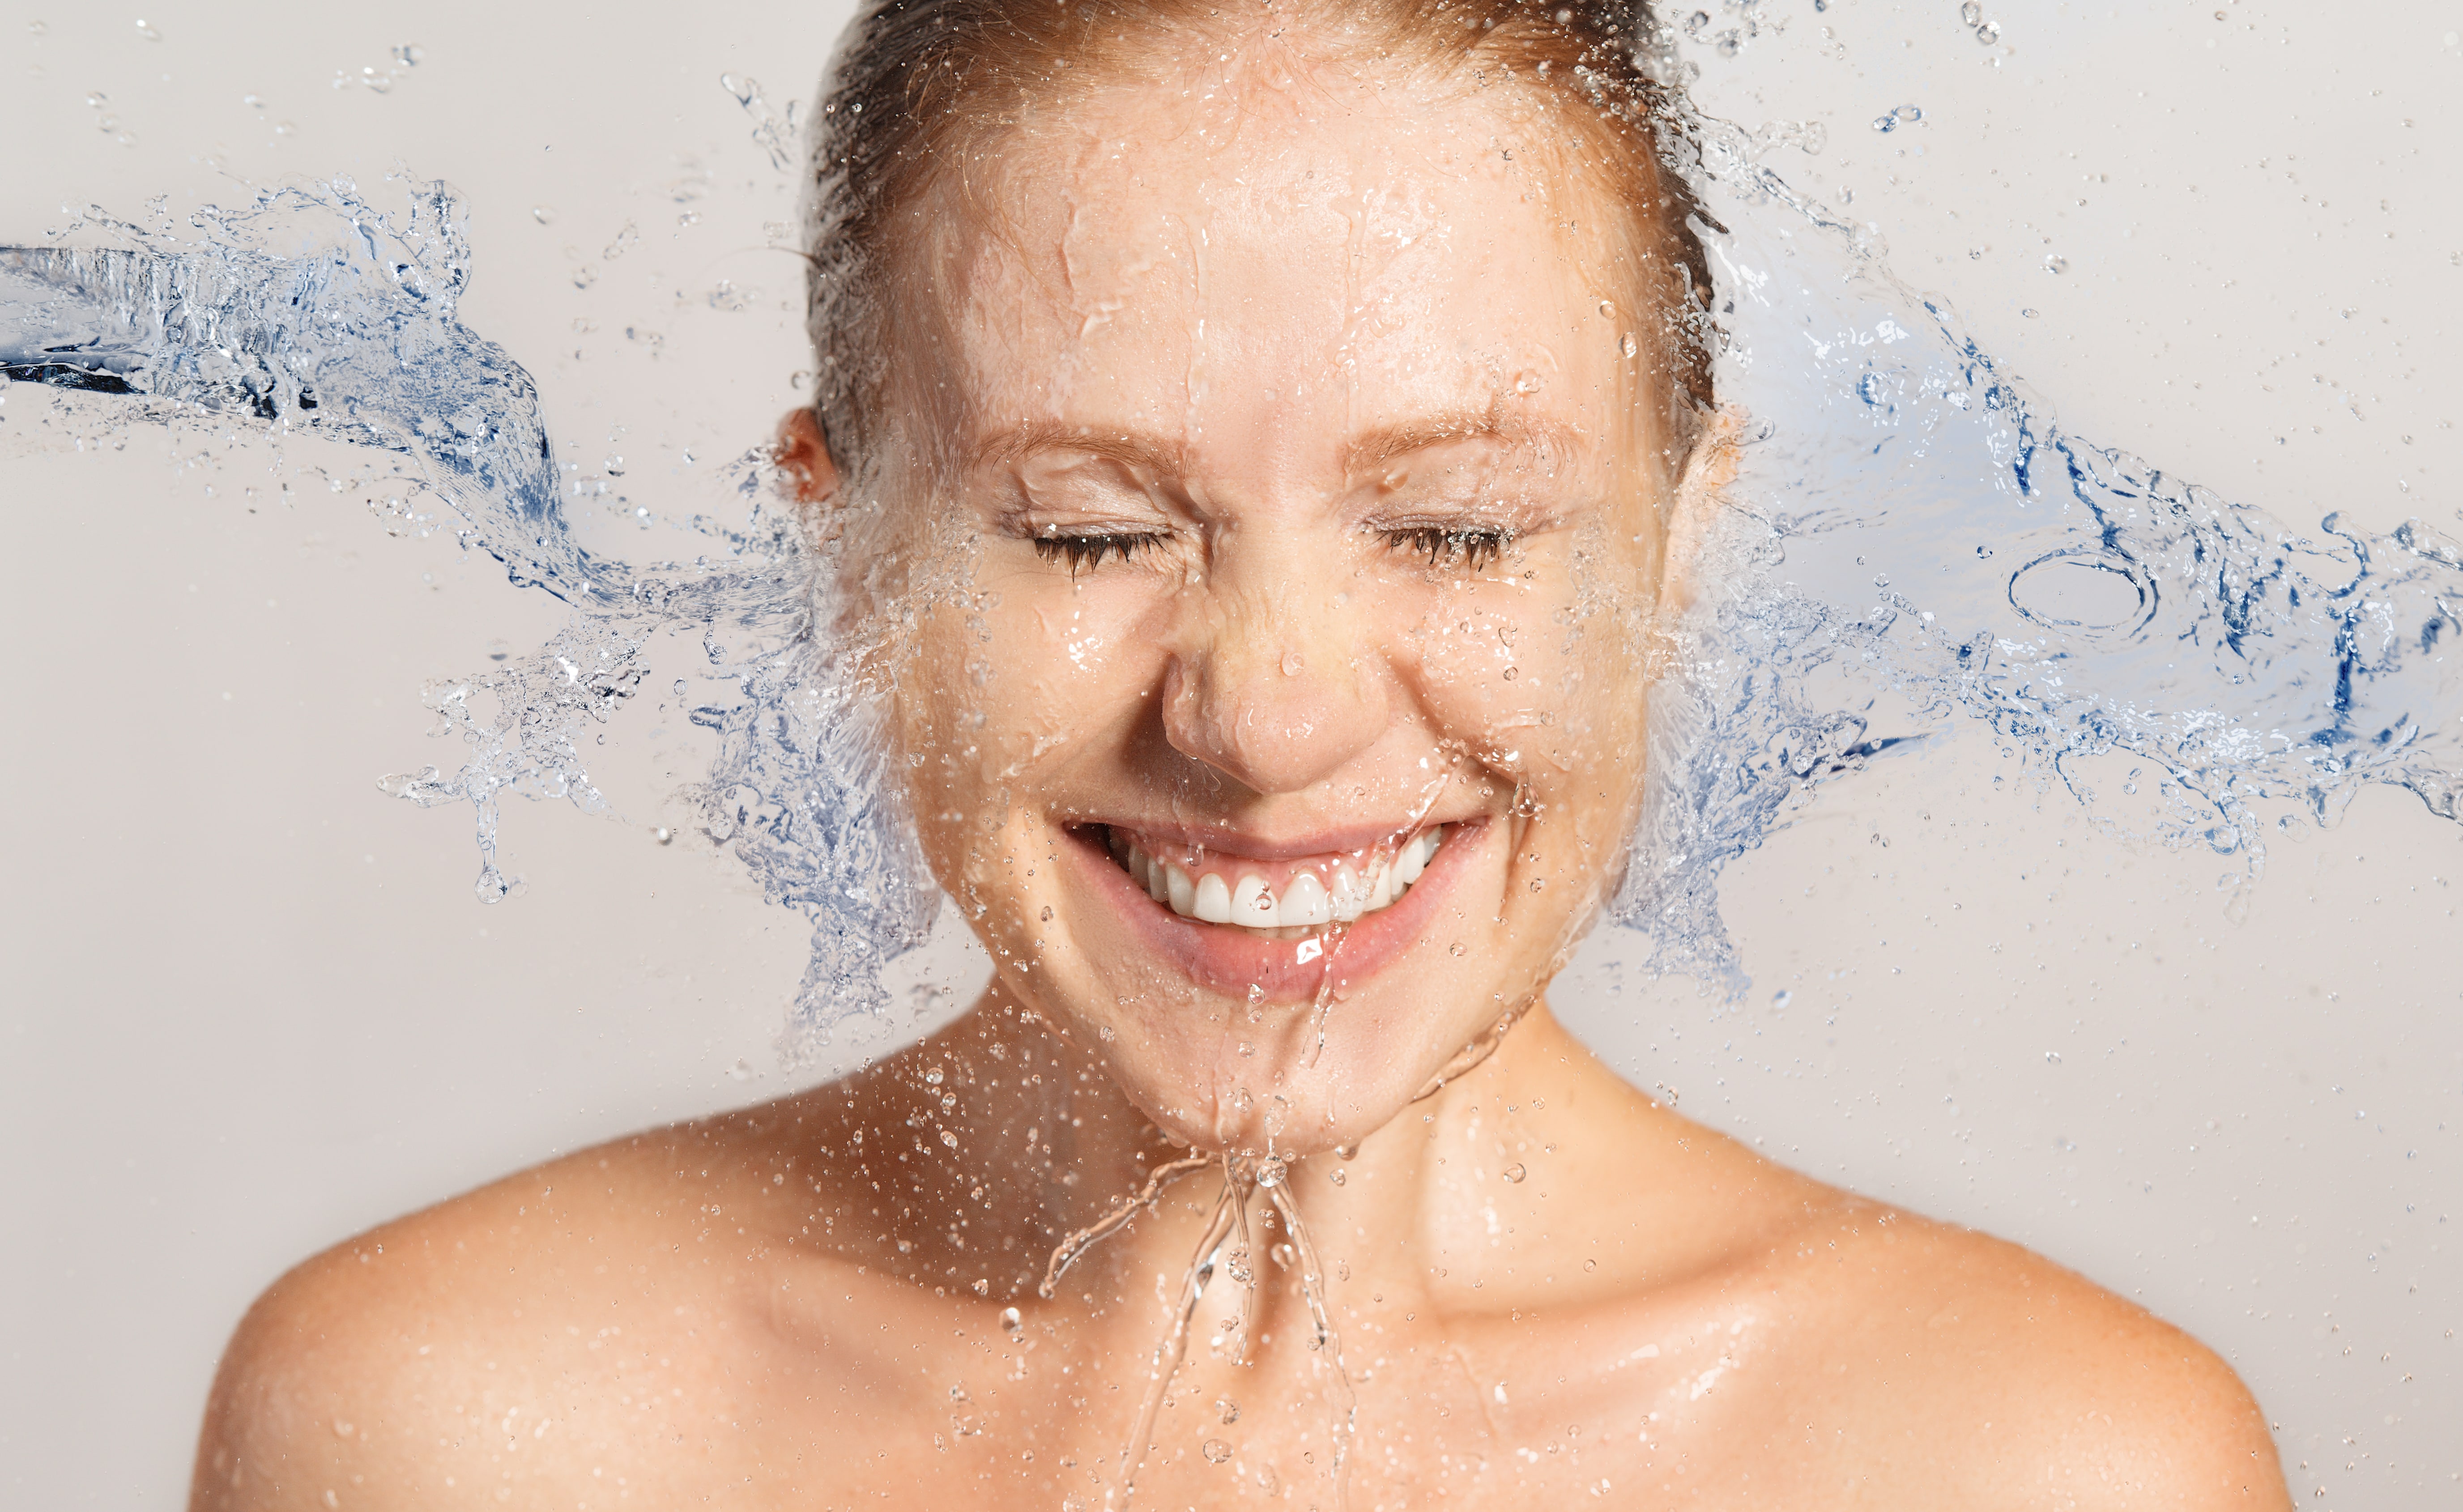 Shower face. Лицо девушки брызги воды. Лицо девушки в воде. Увлажнение кожи. Увлажненная кожа лица.